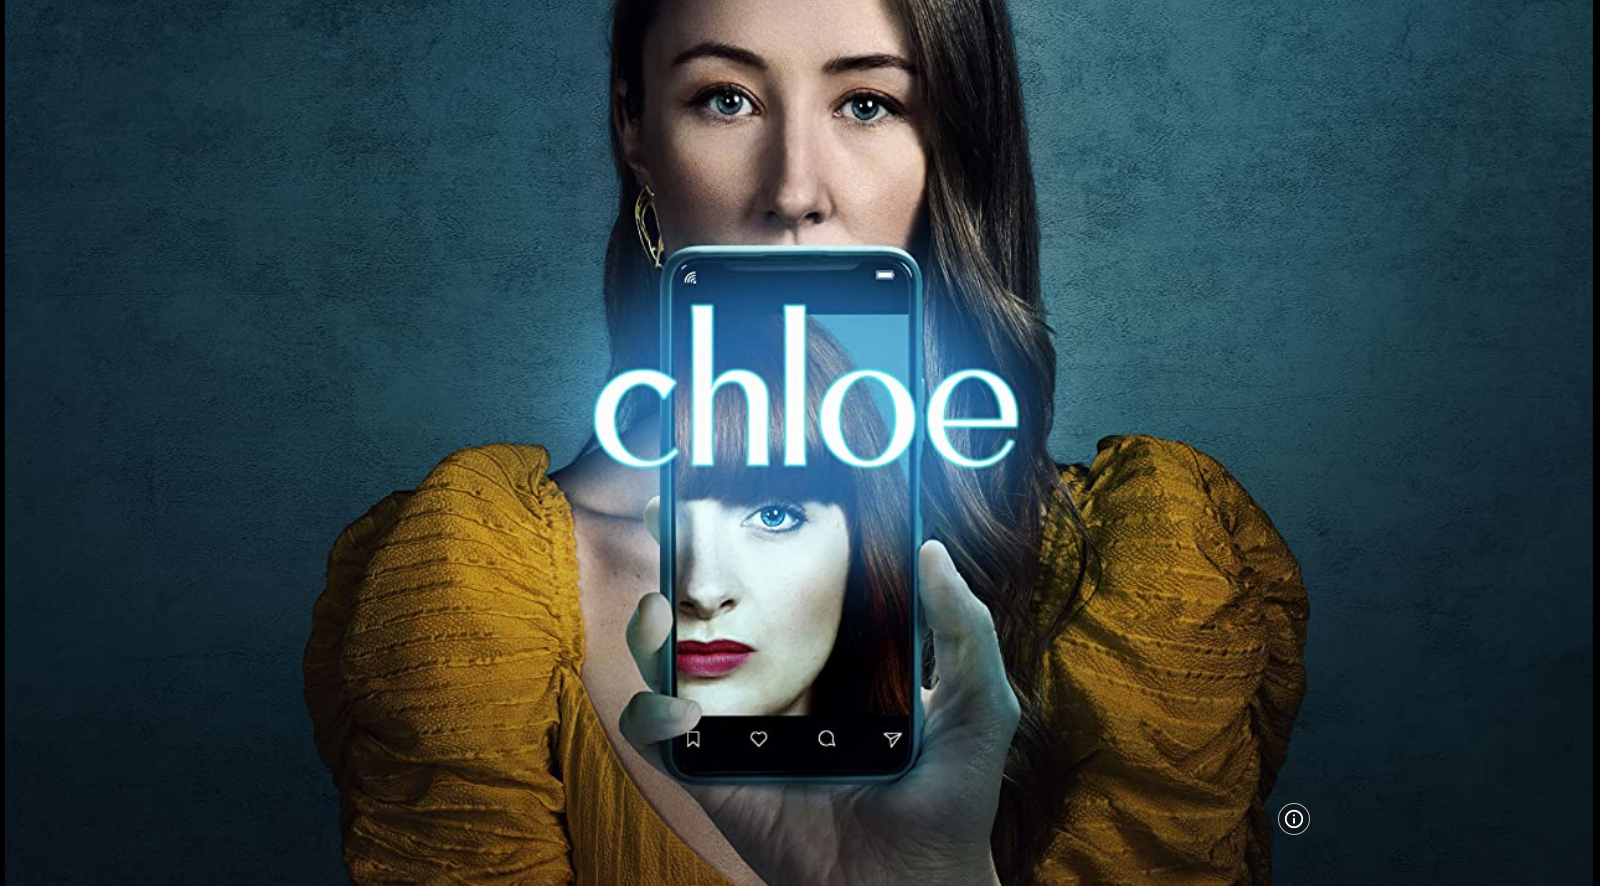 Chloe S01E06 HLG 2160p WEB H265 Seizoen Finale